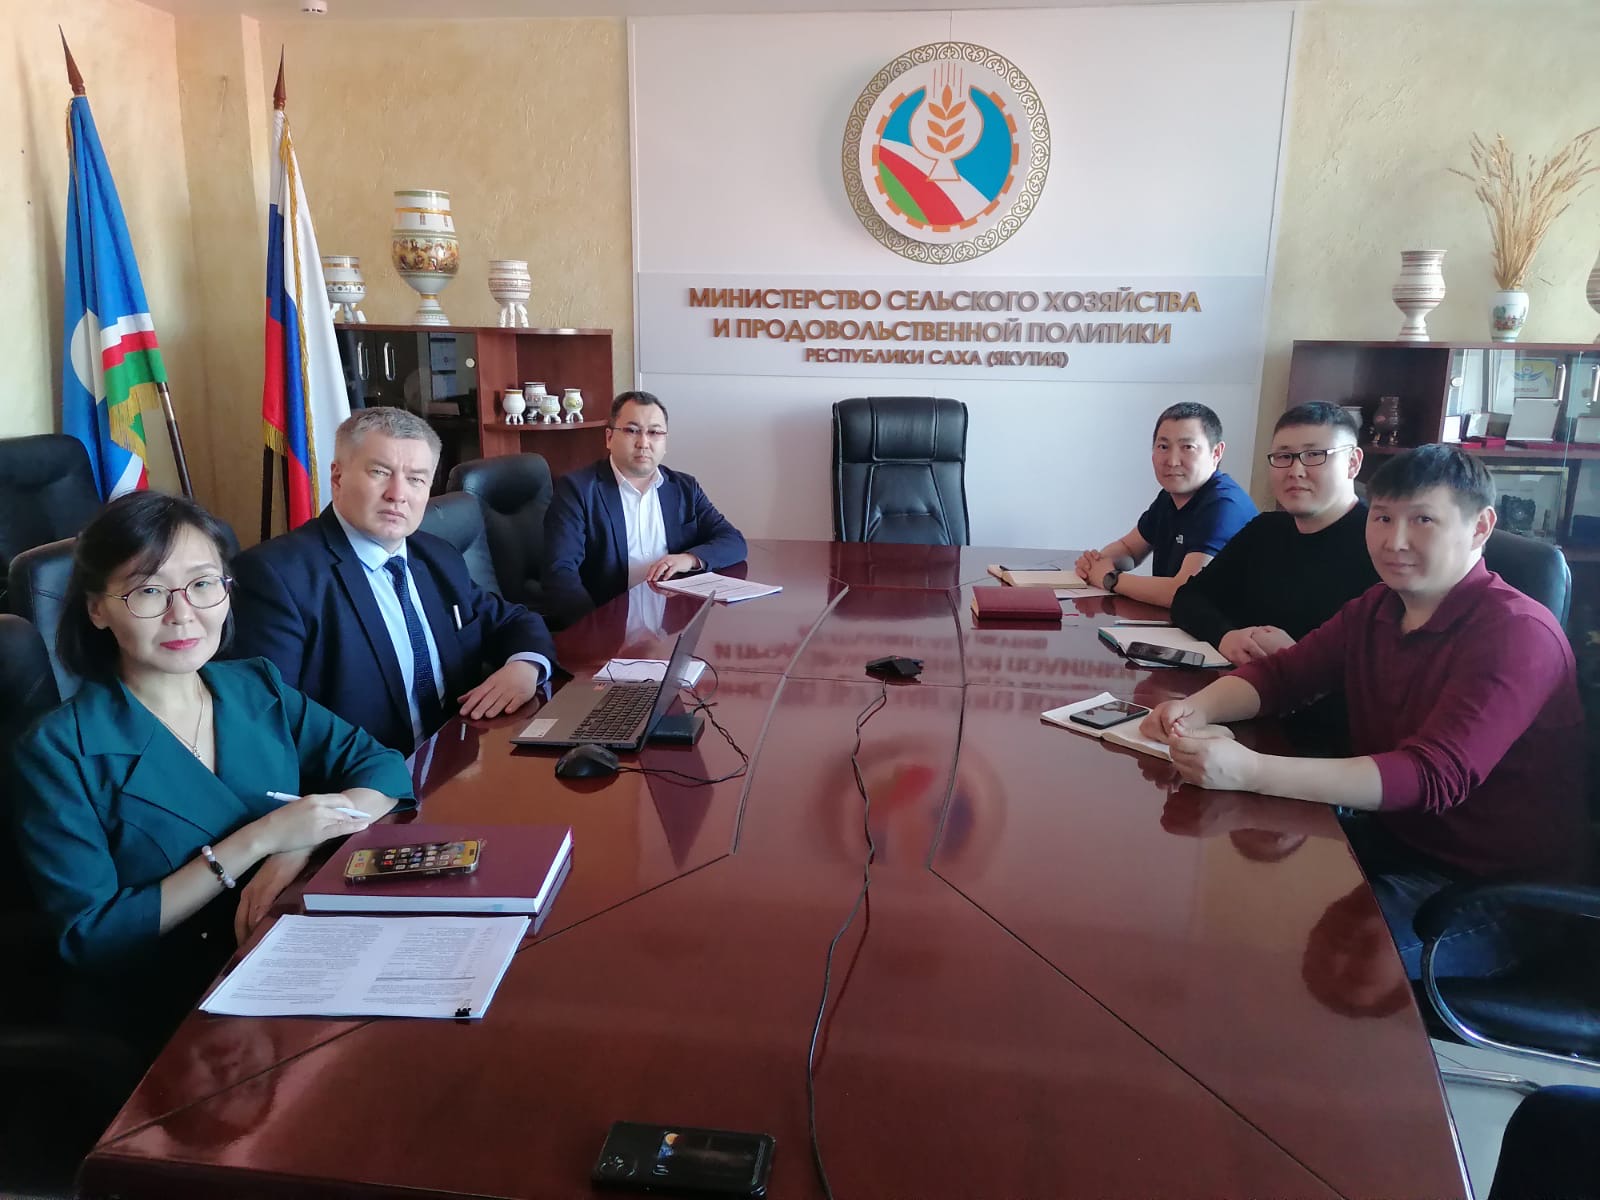 Совещание в Министерстве сельского хозяйства и продовольственной политики Республики Саха (Якутия)